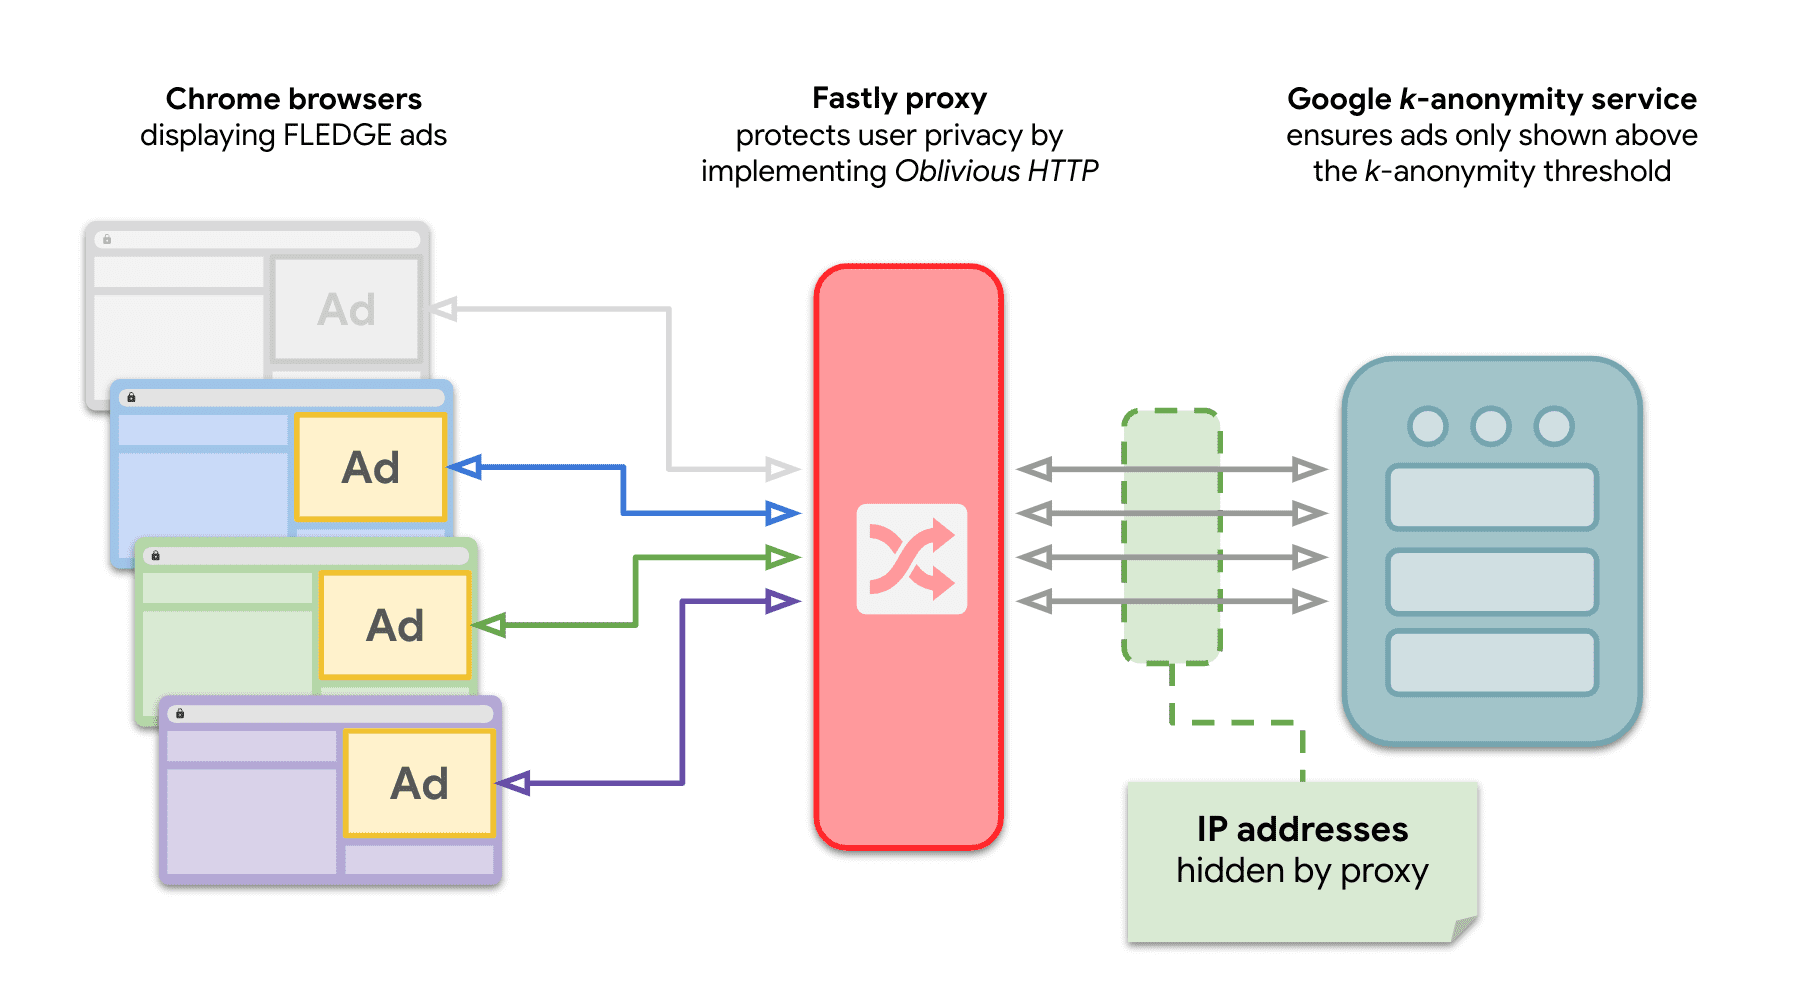 圖表顯示 Chrome 中有多個網站向 k-anonymity 伺服器傳送要求，並透過 OHTTP 轉送放送 FLEDGE 廣告。